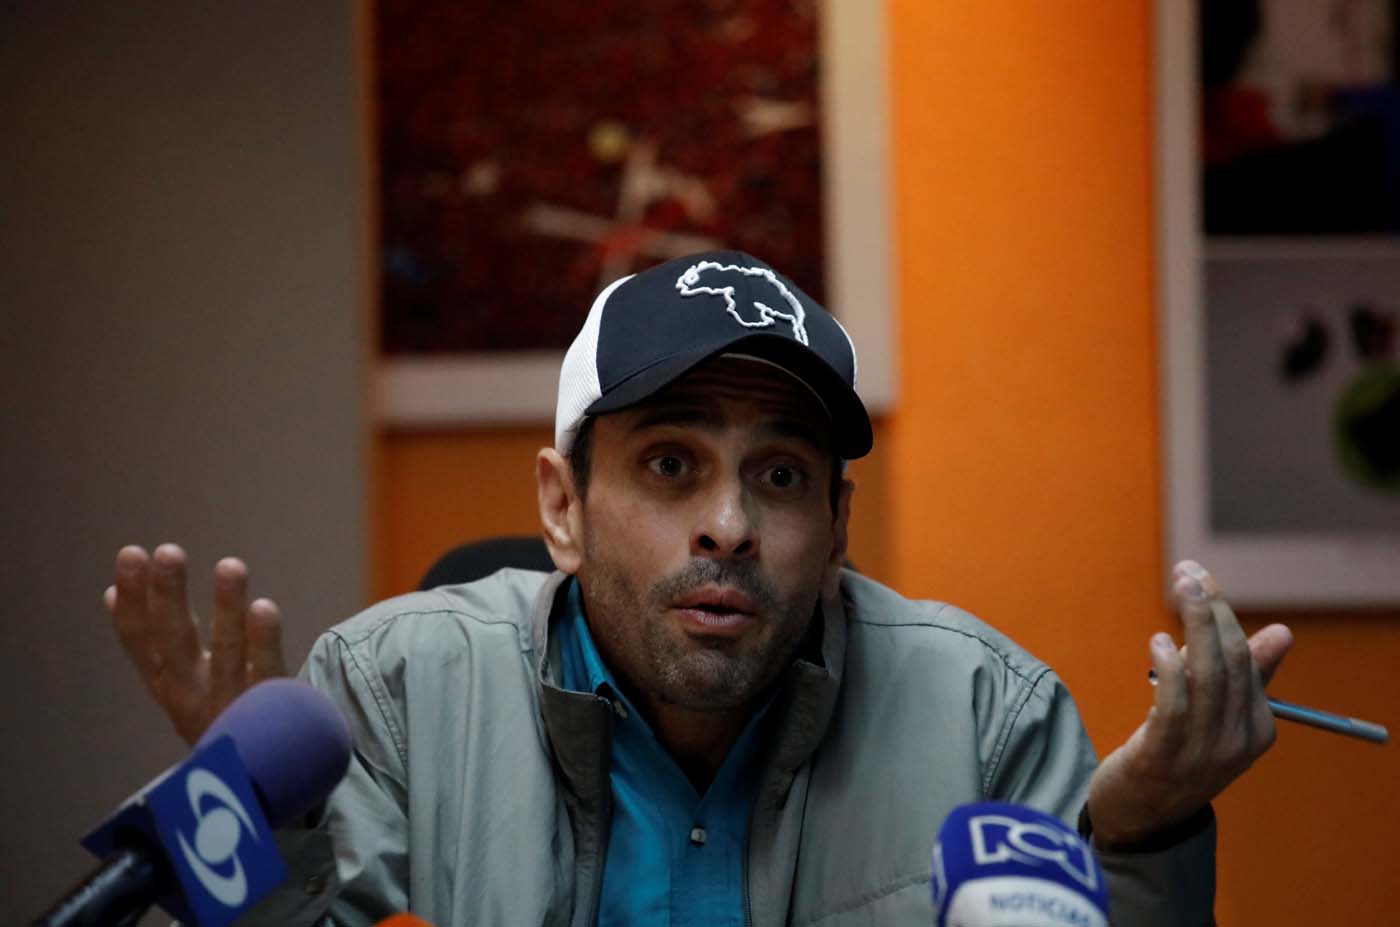 “Es una atrocidad”: Así calificó Capriles la muerte del general Baduel bajo la custodia del régimen